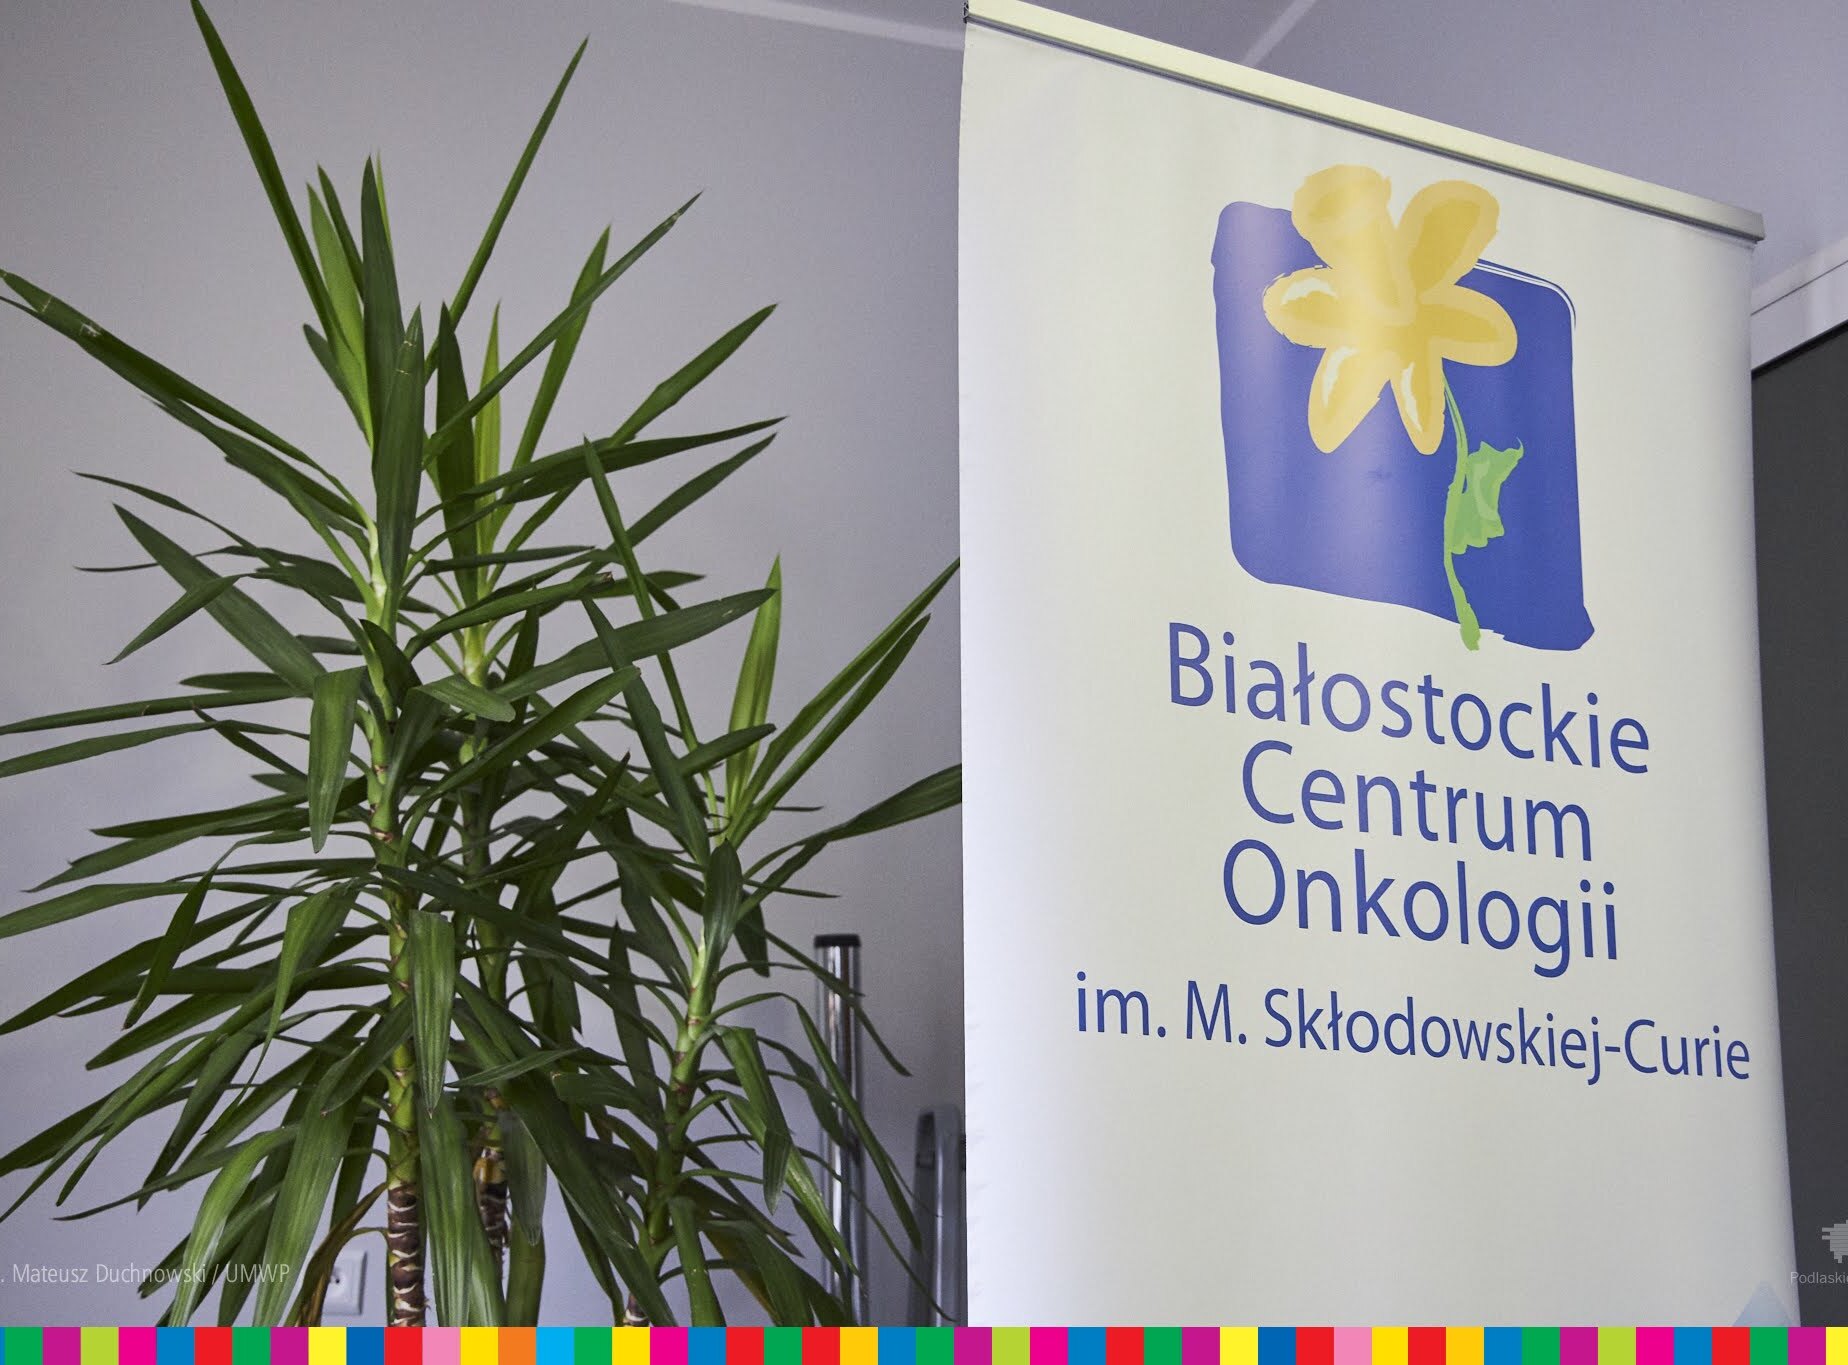 Obok rośliny widoczny jest roll-up z logiem Białostockiego Centrum Onkologii